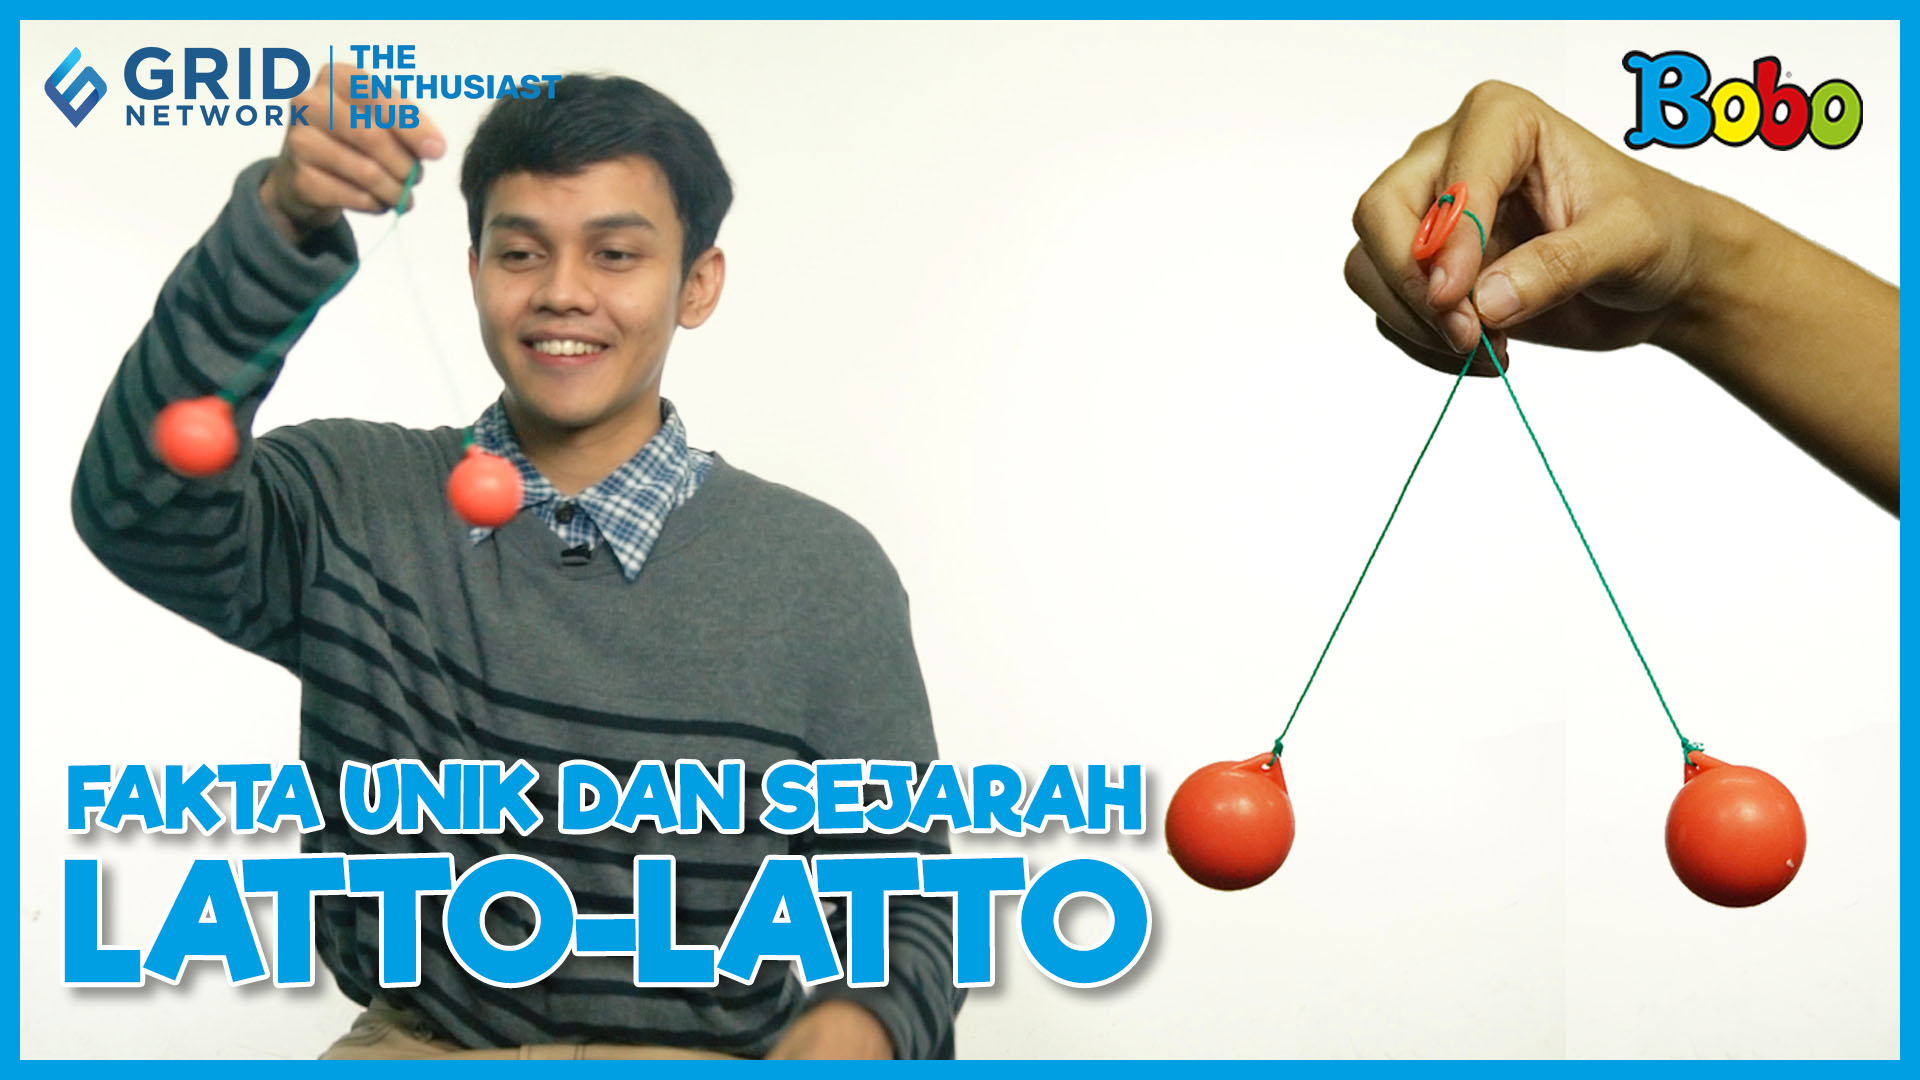 Fakta Unik dan Sejarah Latto-Latto yang Bukan Berasal dari Indonesia